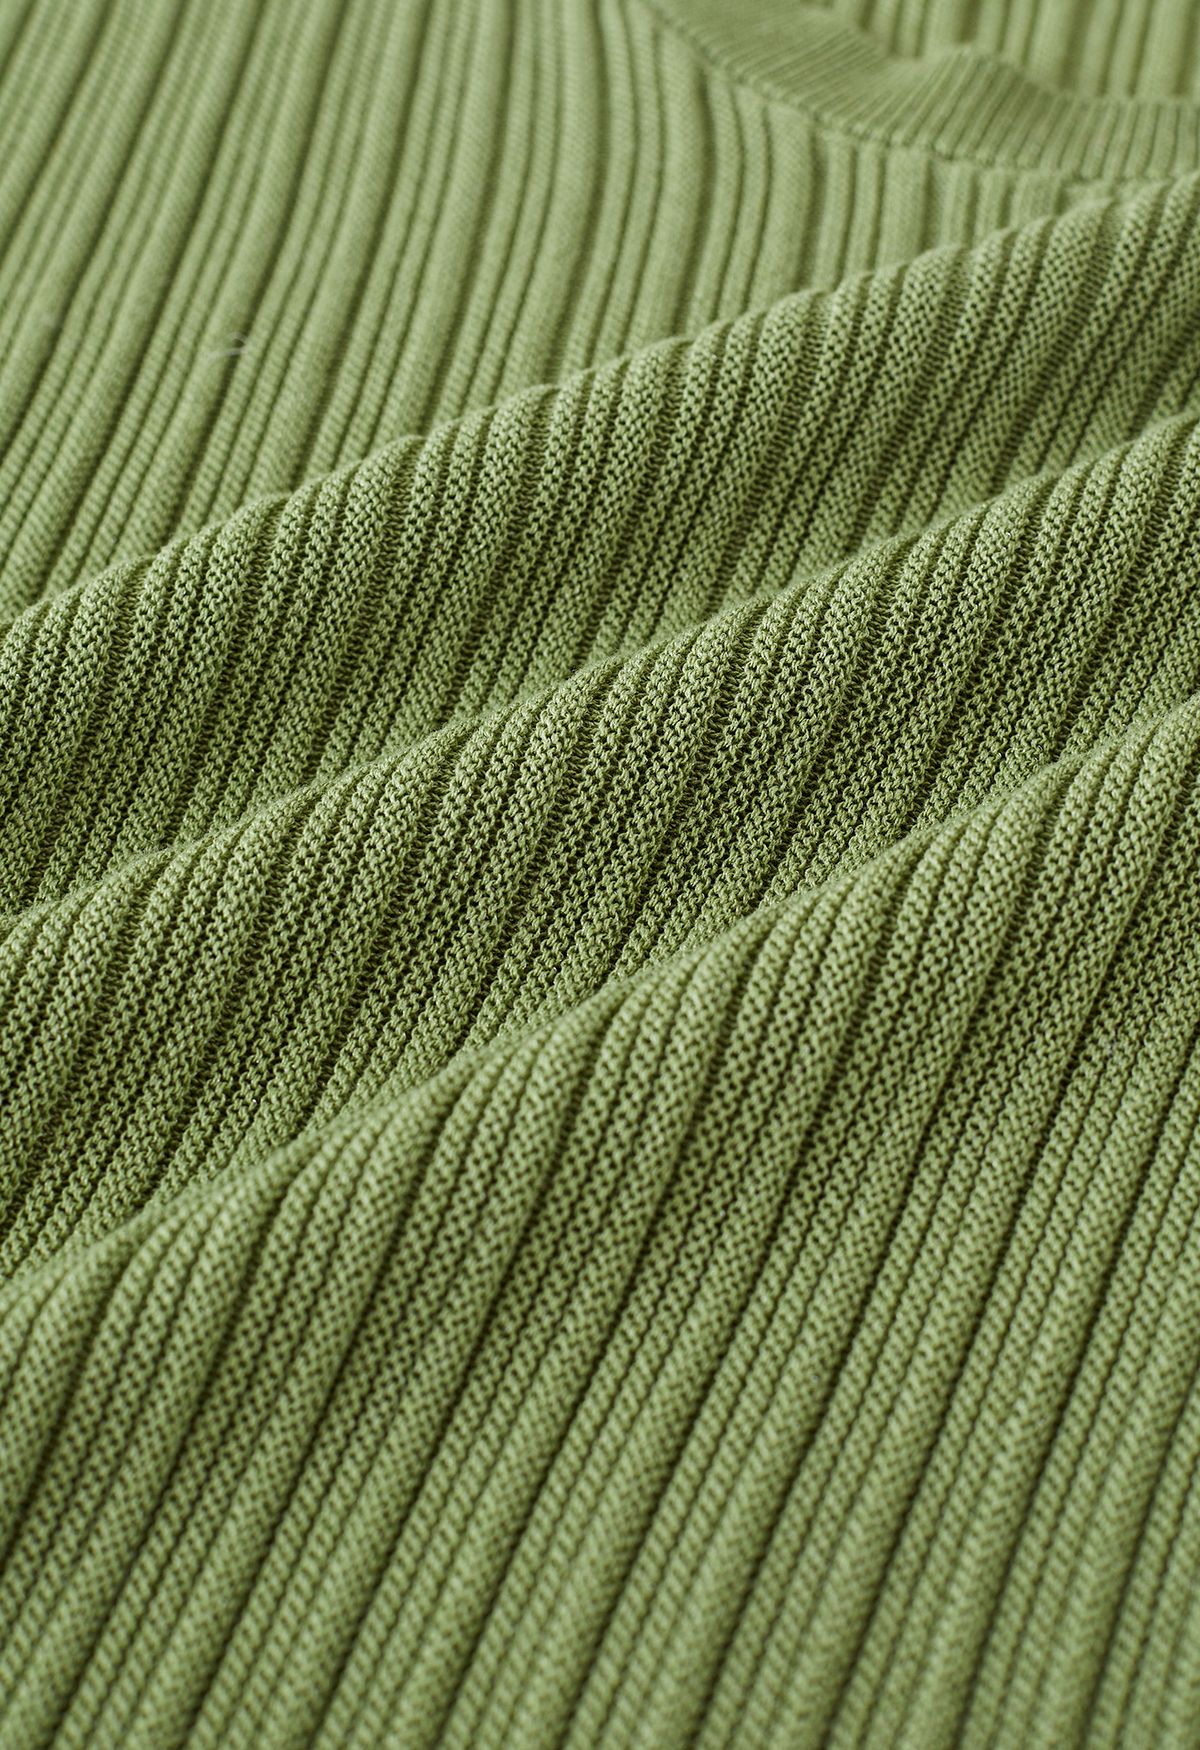 Conjunto de pantalón y top de punto con cordón en la manga en verde